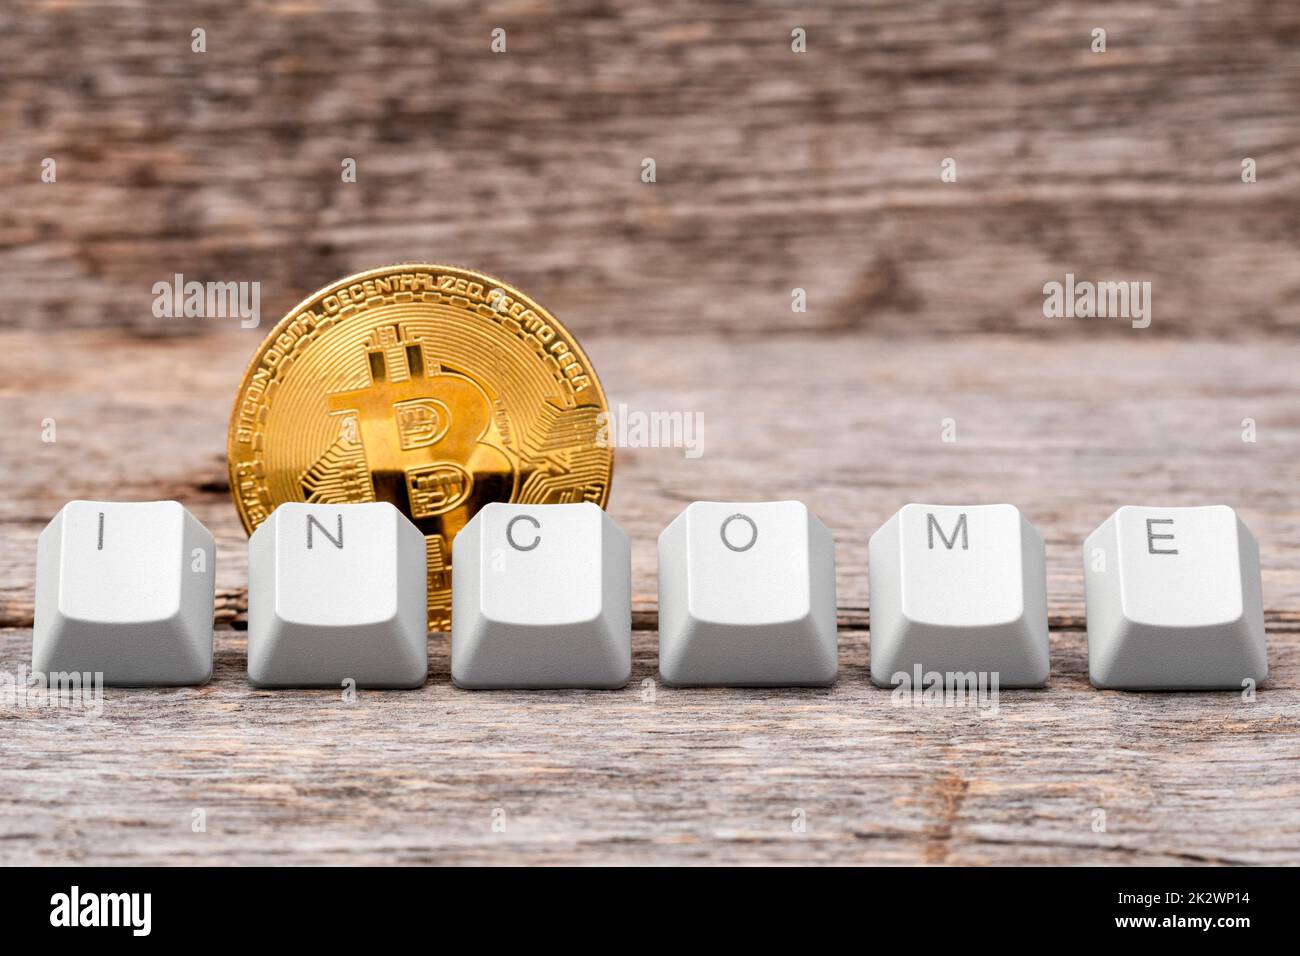 La pièce de monnaie en bitcoin et les touches du clavier de l'ordinateur sont disposées pour épeler LE mot DE REVENU Banque D'Images